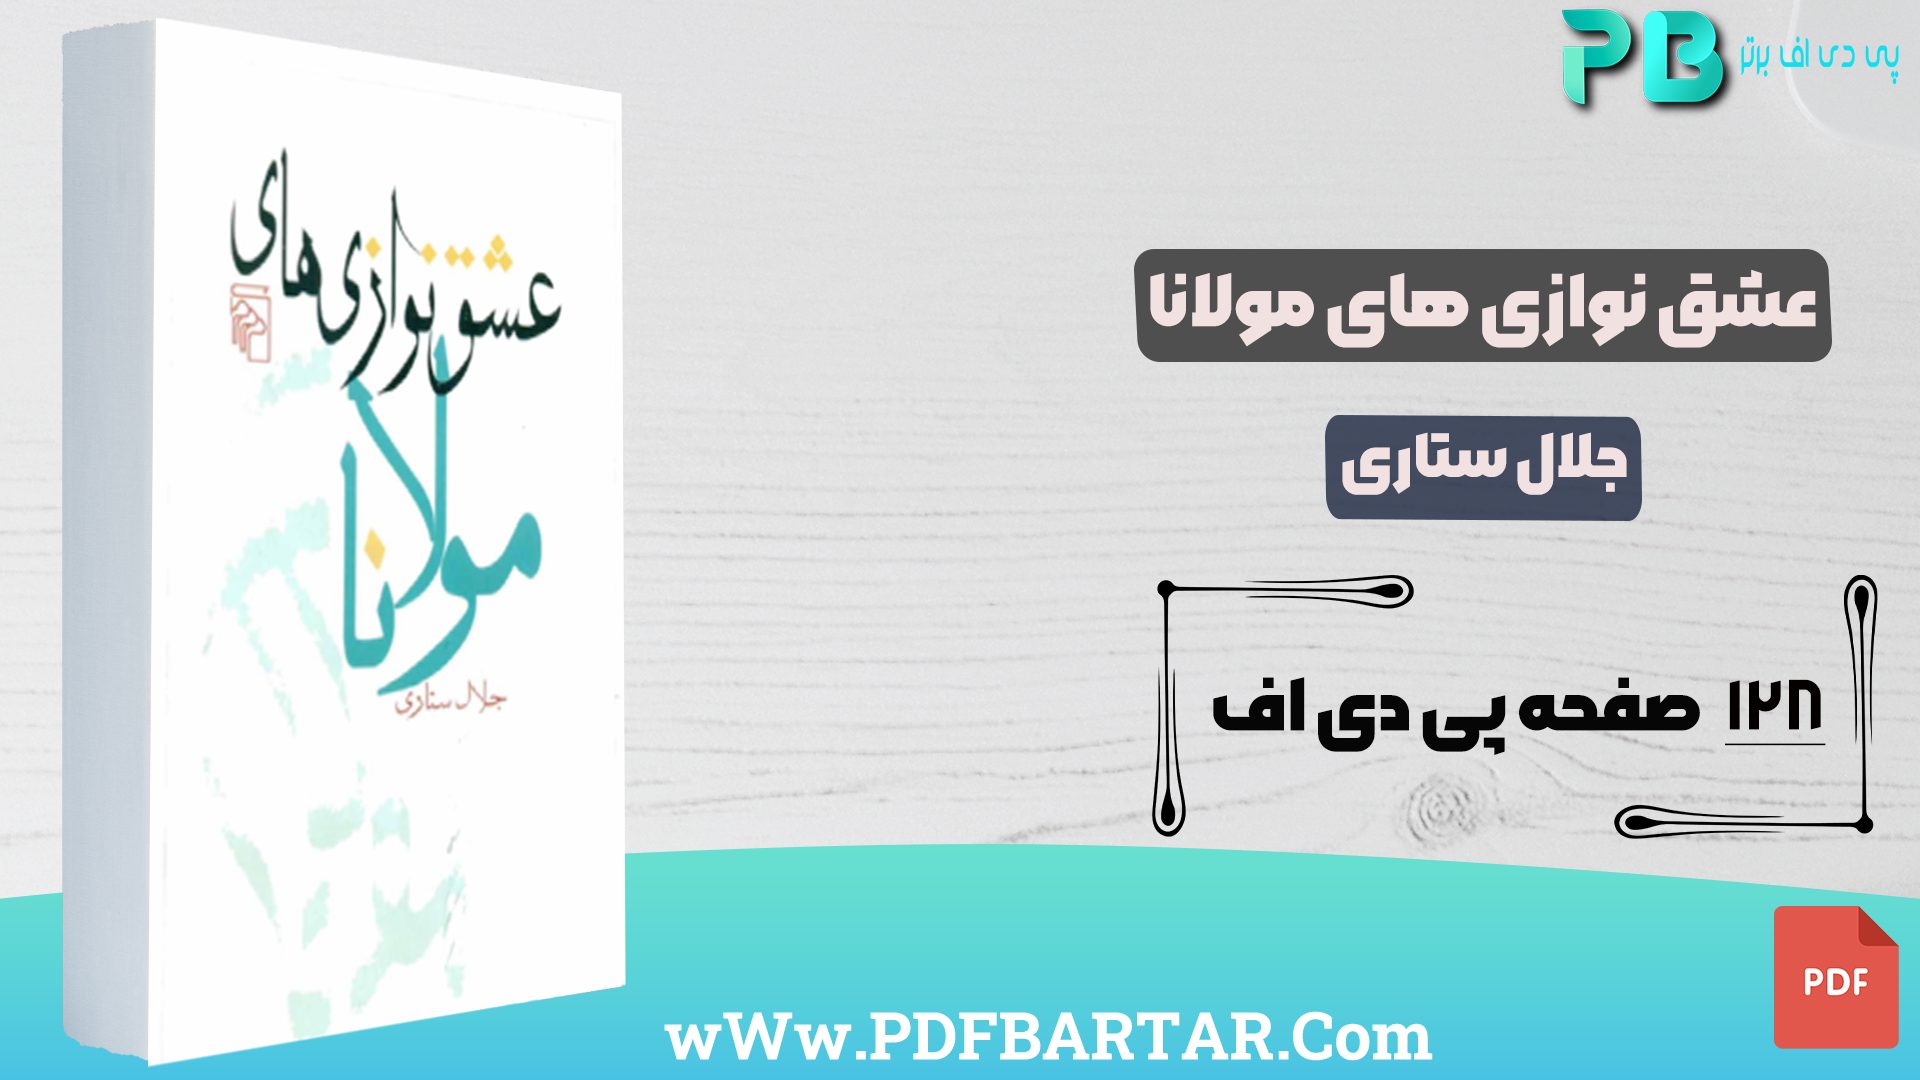 دانلود پی دی اف کتاب عشق نوازی های مولانا جلال ستاری PDF - پی دی اف برتر